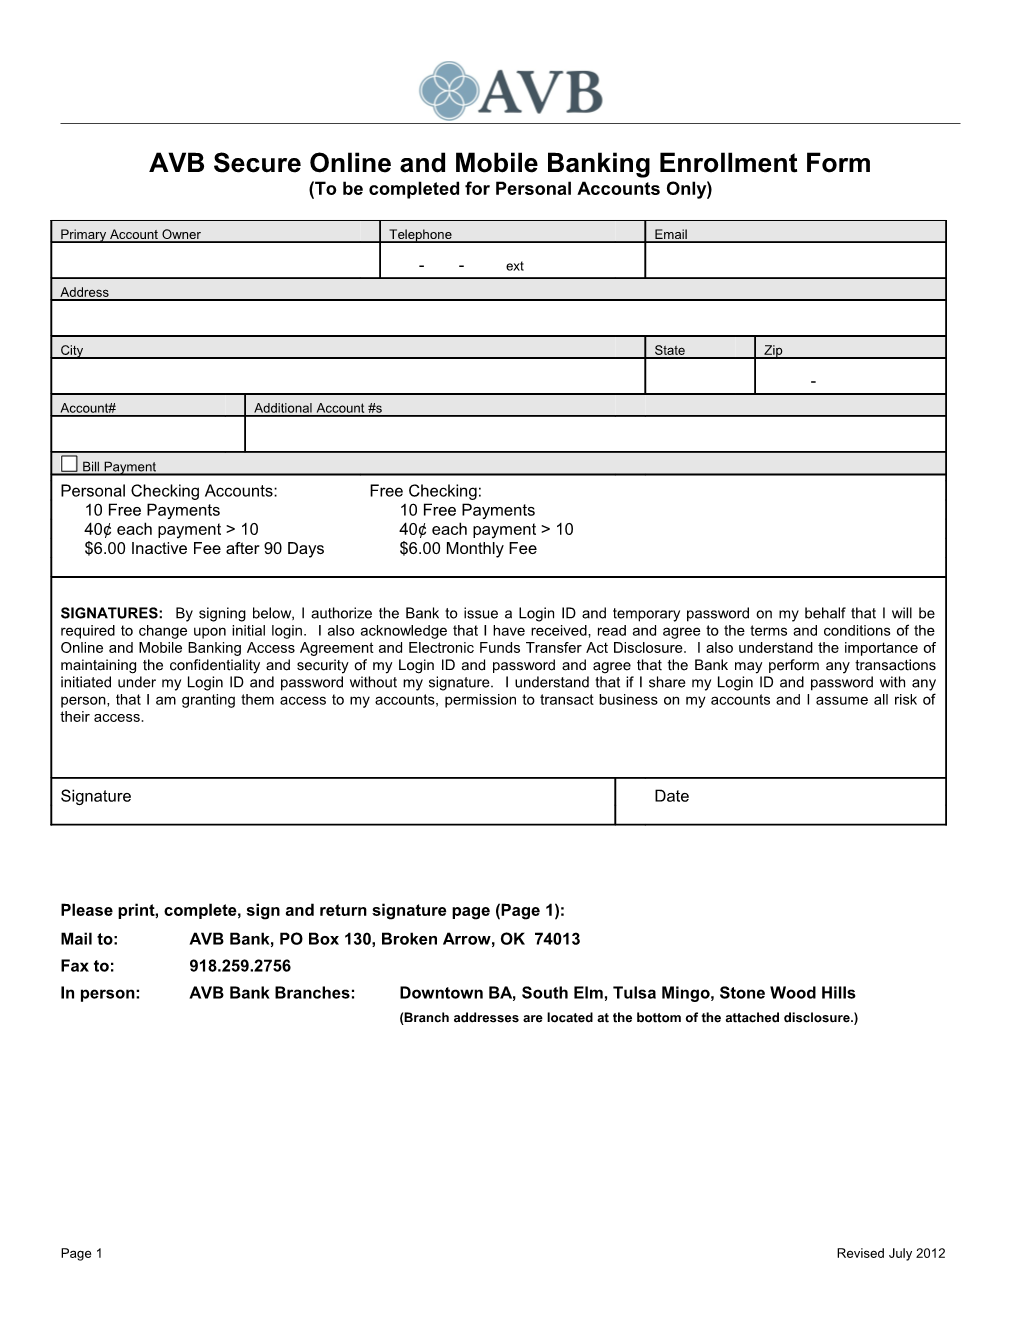 AVB Secure Online Banking Enrollment Form